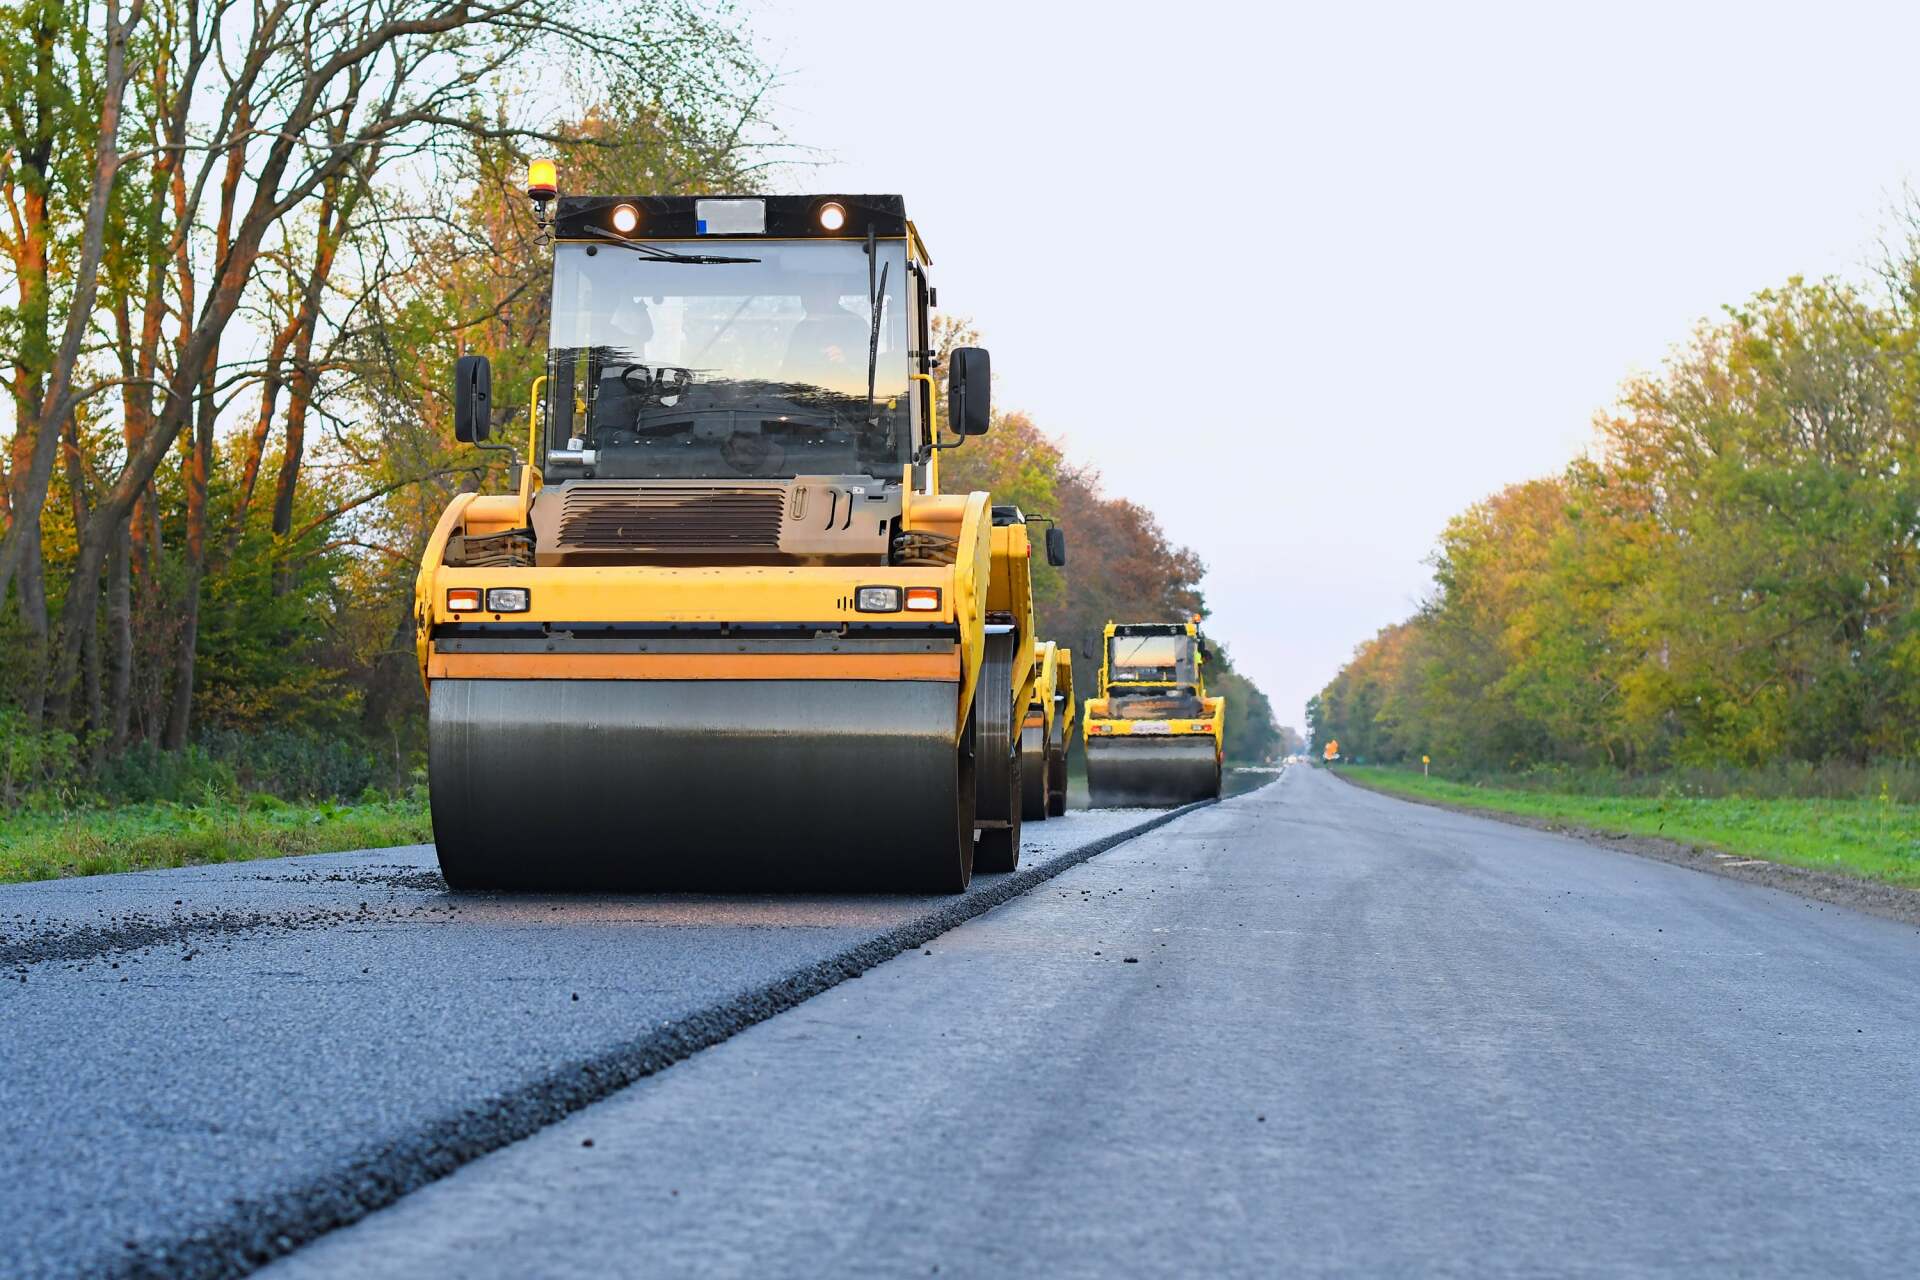 worker leveling fresh asphalt on a road construction